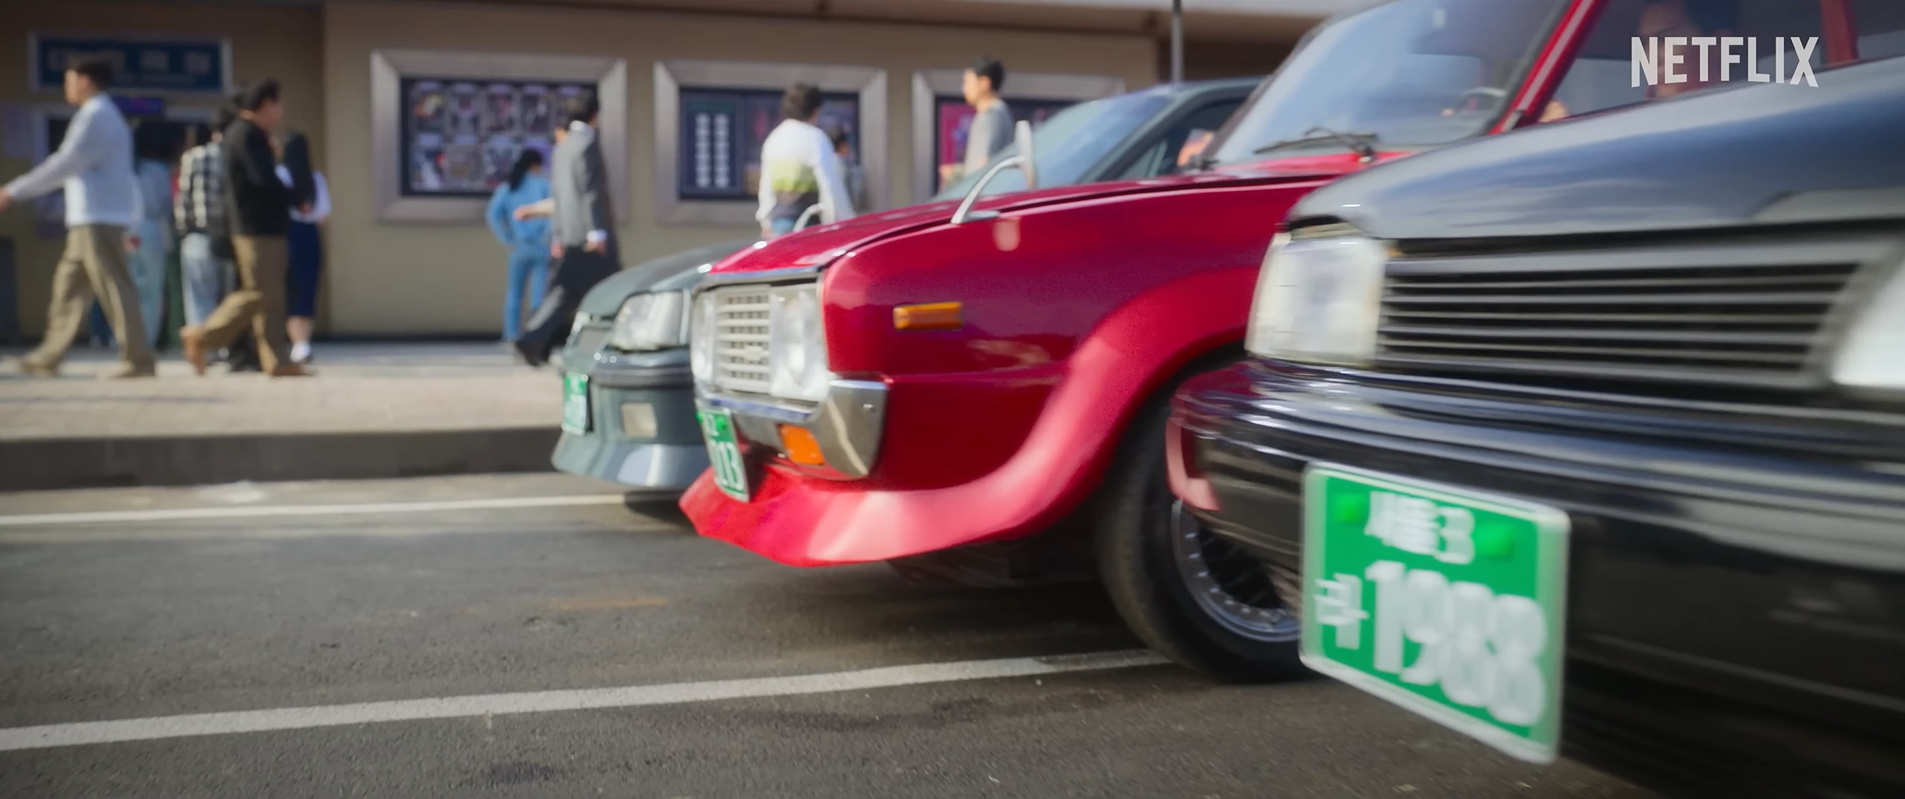 넷플릭스 영화 서울대작전의 한 장면&#44; 경주용 자동차 3대가 대기를 하고 있다.